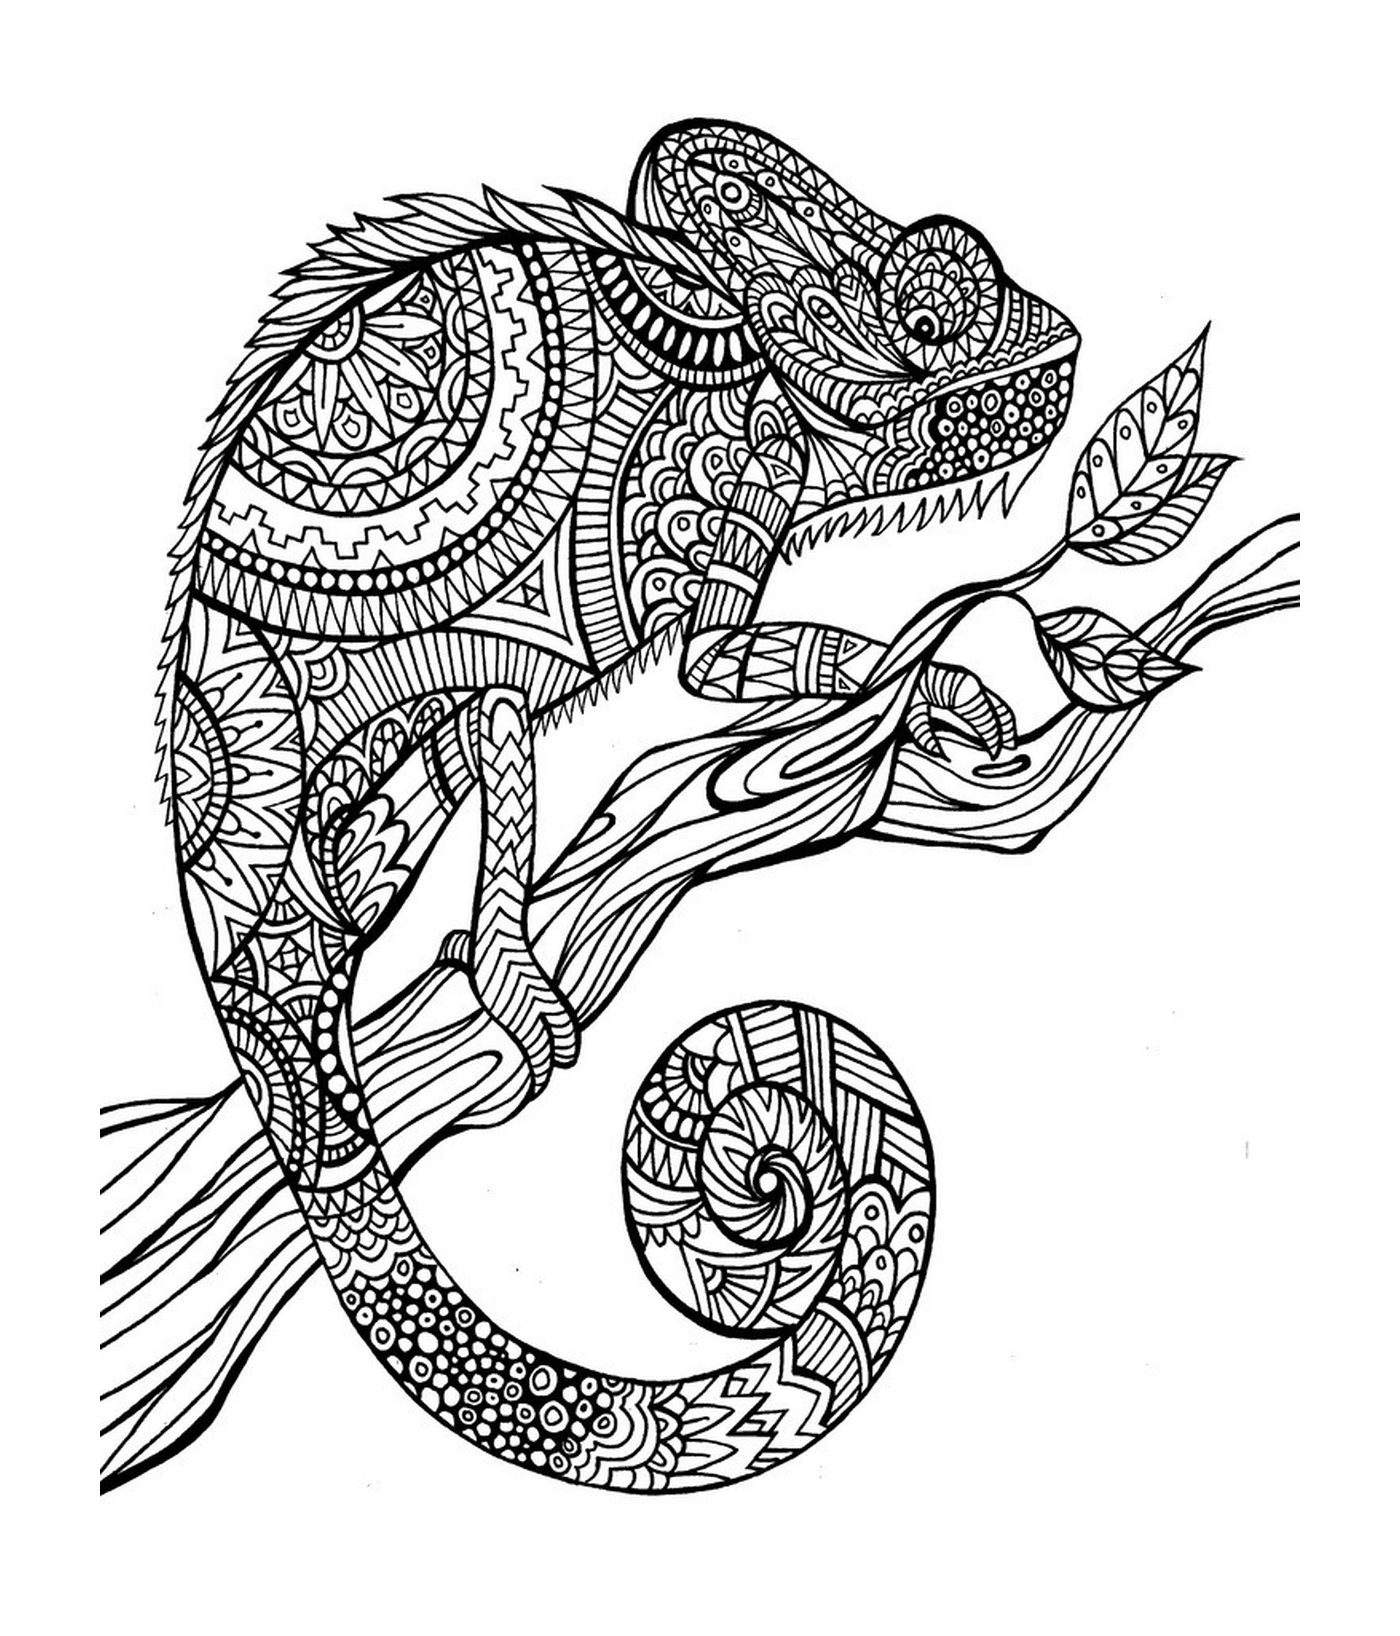  Um camaleão sentado em um ramo 